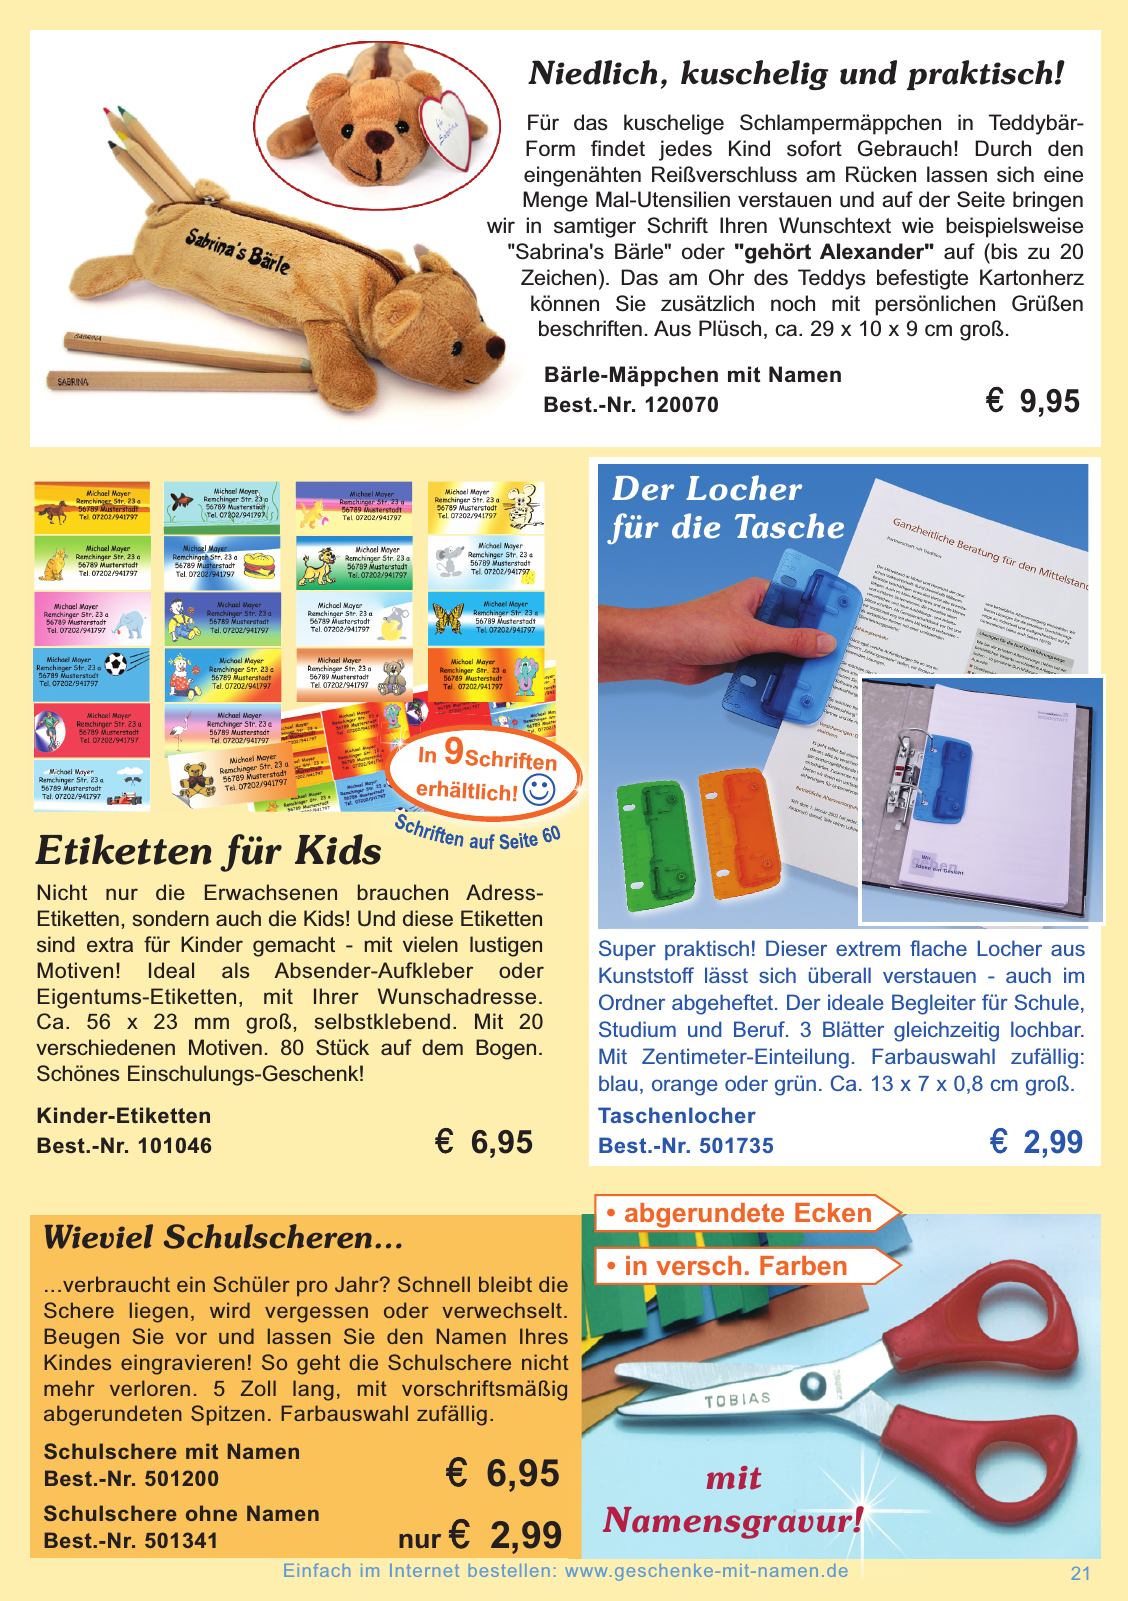 Vorschau Geschenke mit Namen Katalog 2014 / 2015 Seite 21